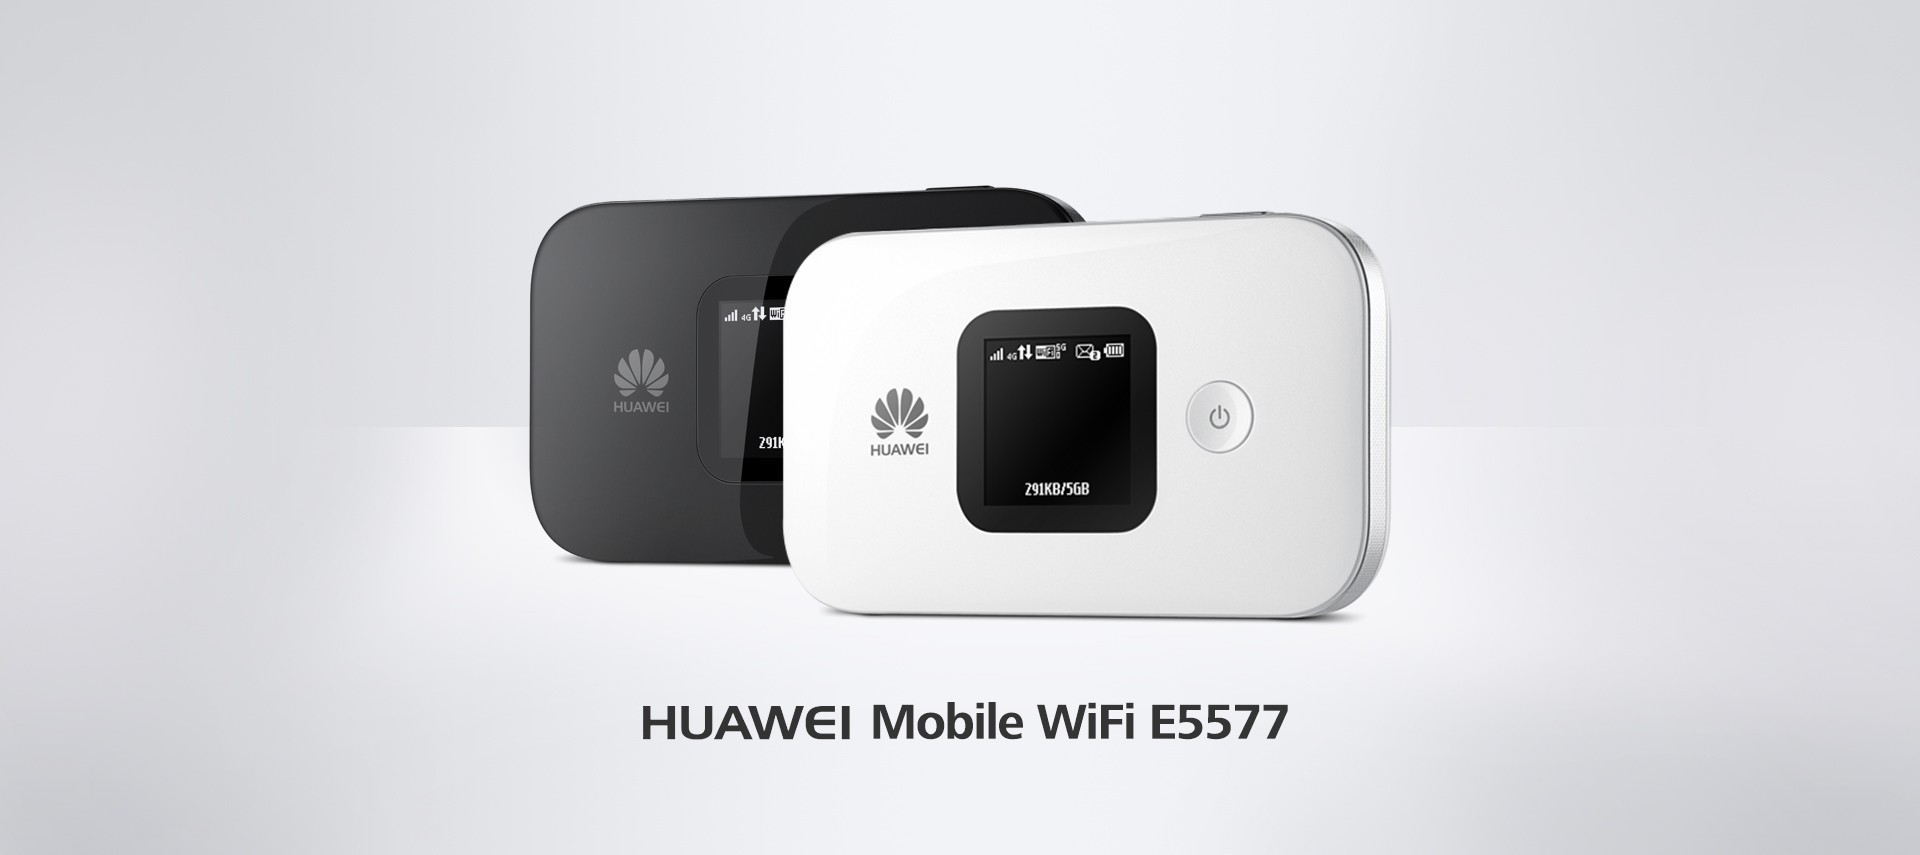 HUAWEI Mobile WiFi E5577 